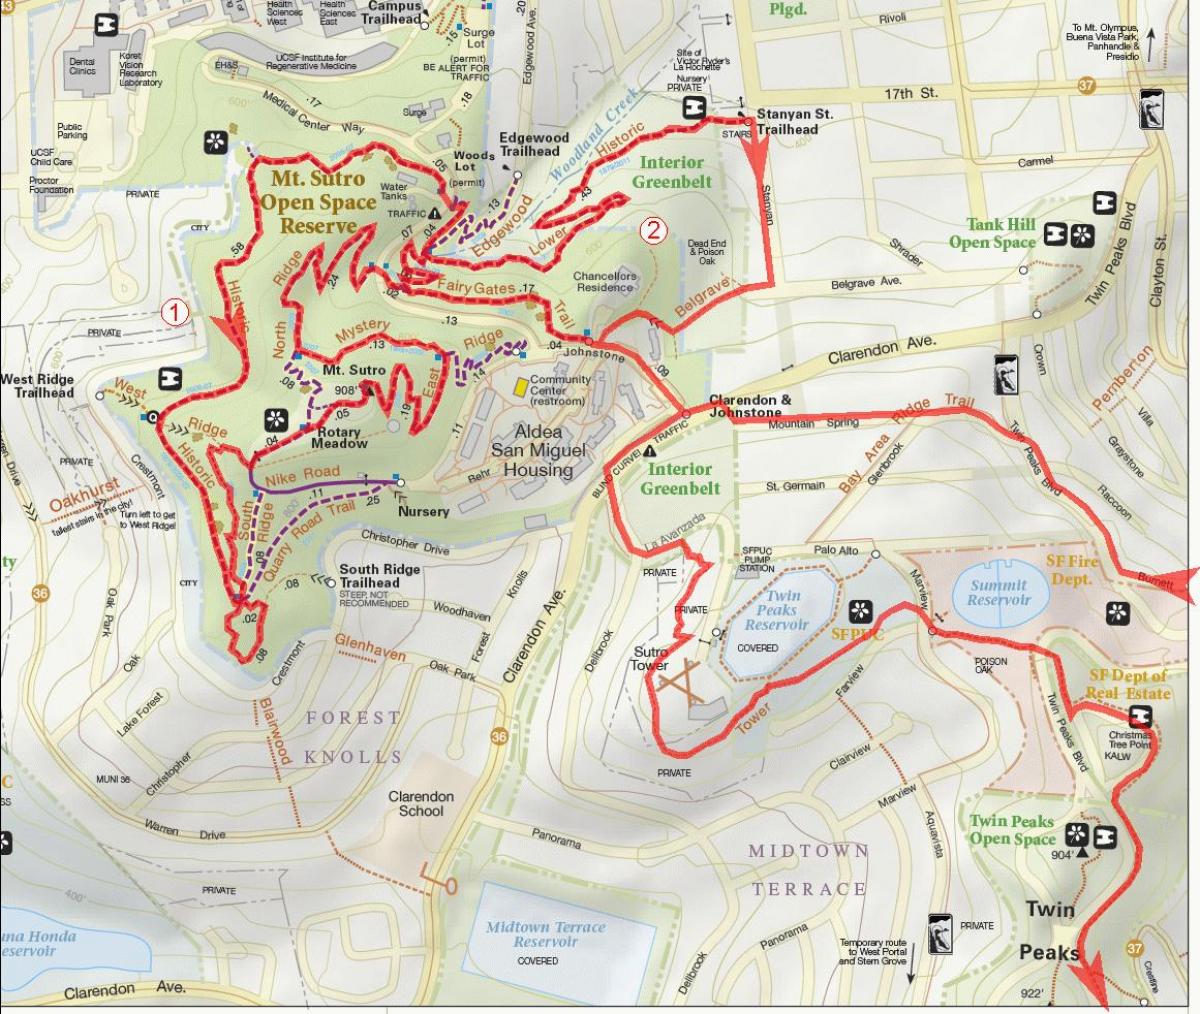 Mapa bay area bike trails